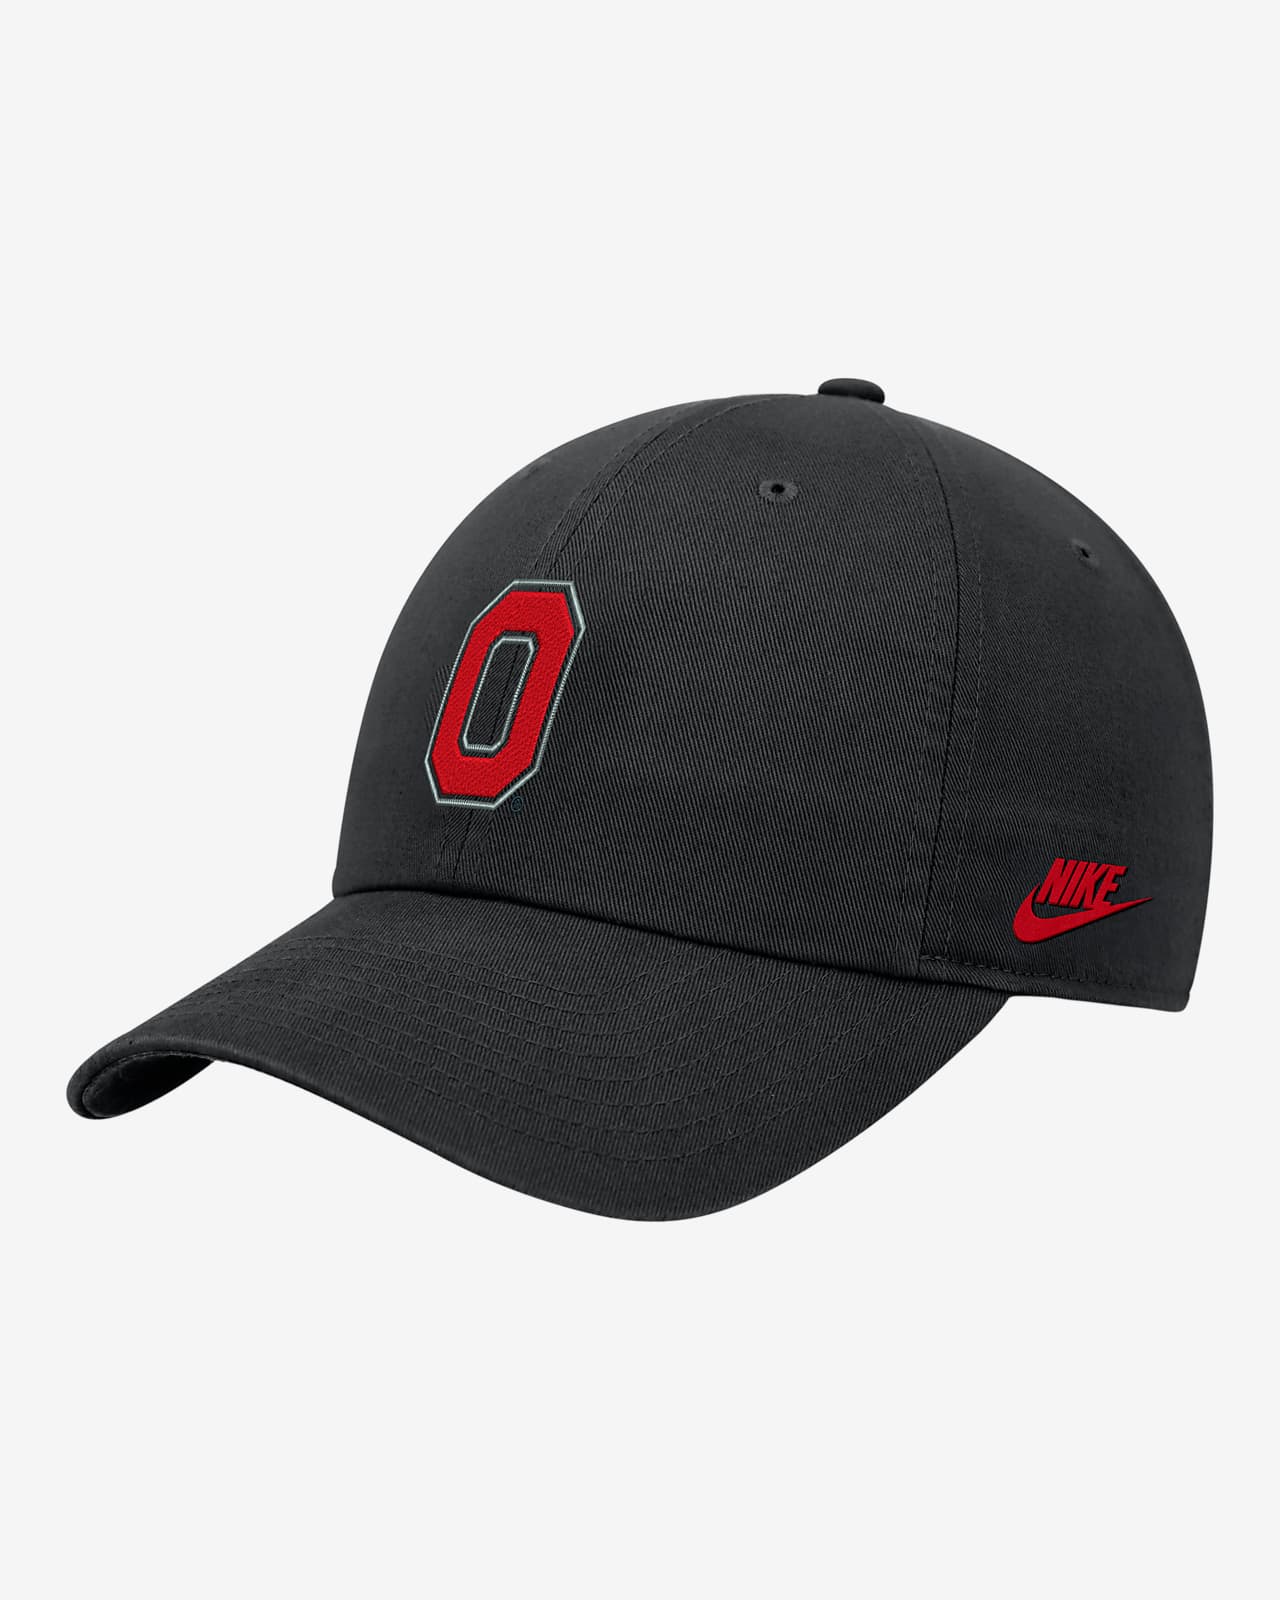 Ohio State Nike College Adjustable Cap